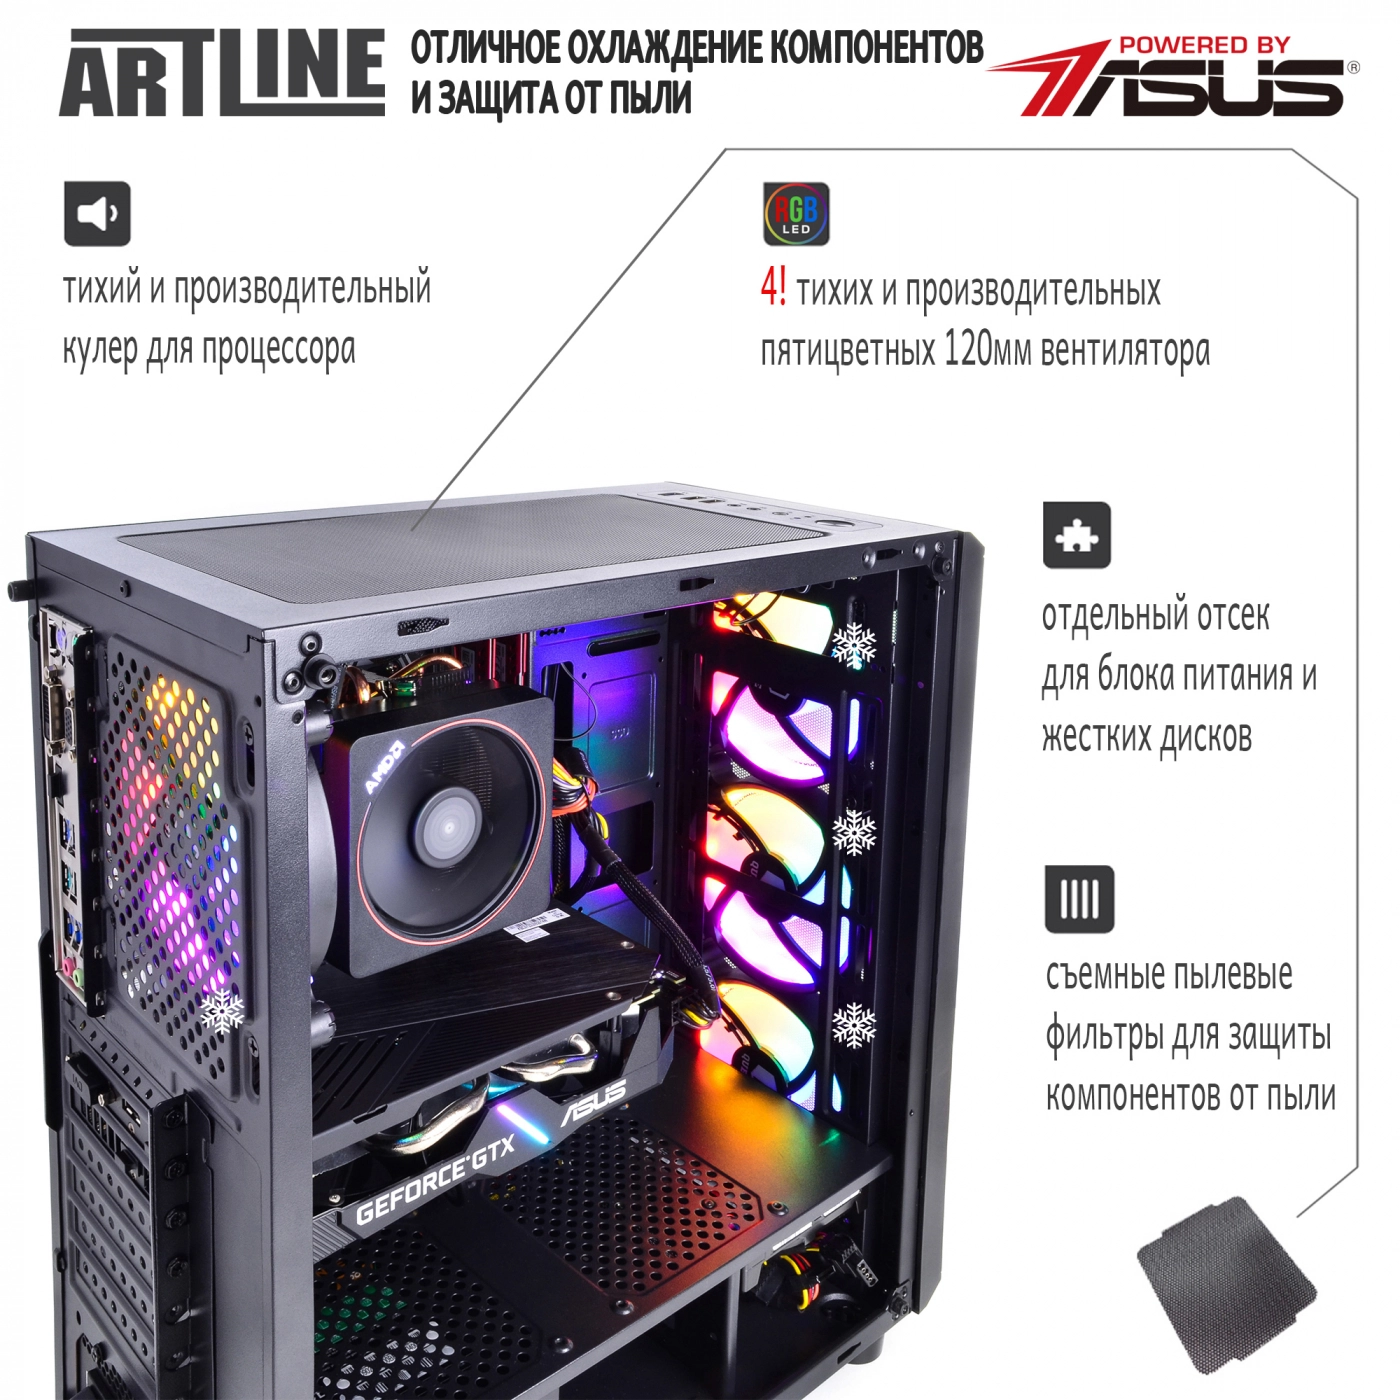 Купить Компьютер ARTLINE Gaming X45v24 - фото 3